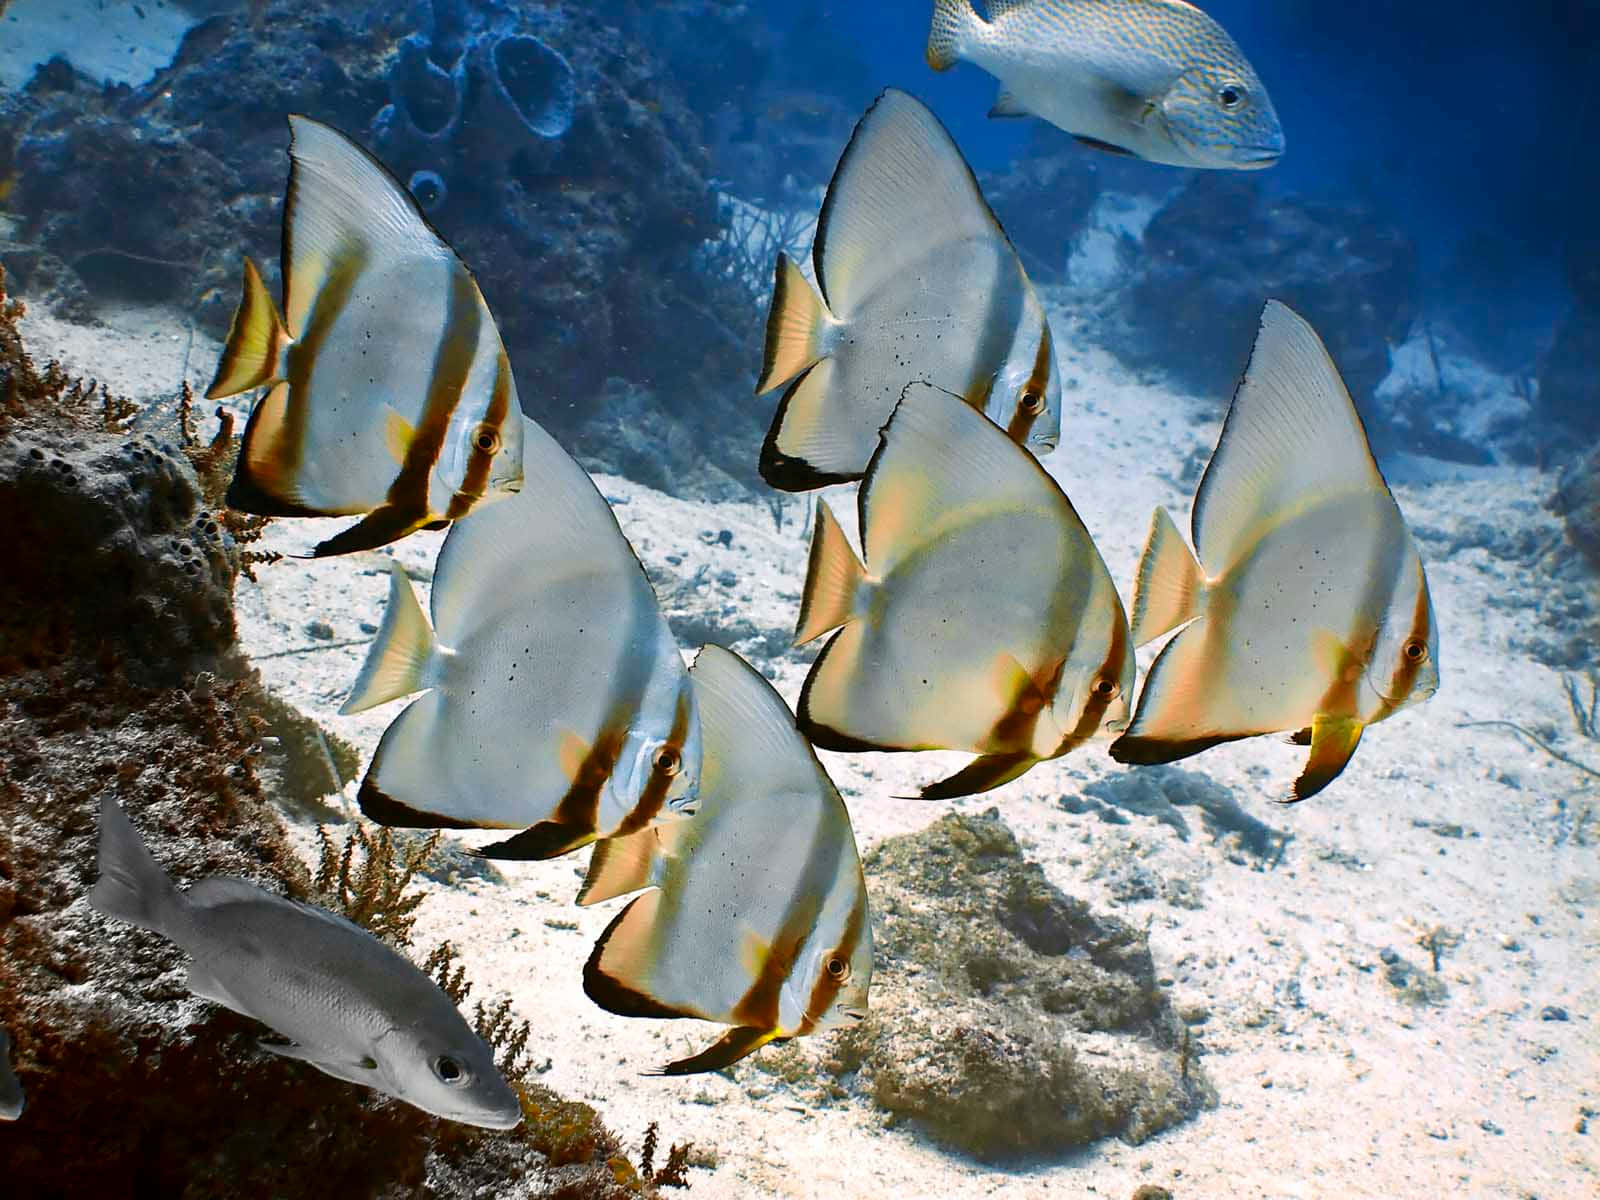 Schoolof Batfish Underwater Scene Wallpaper